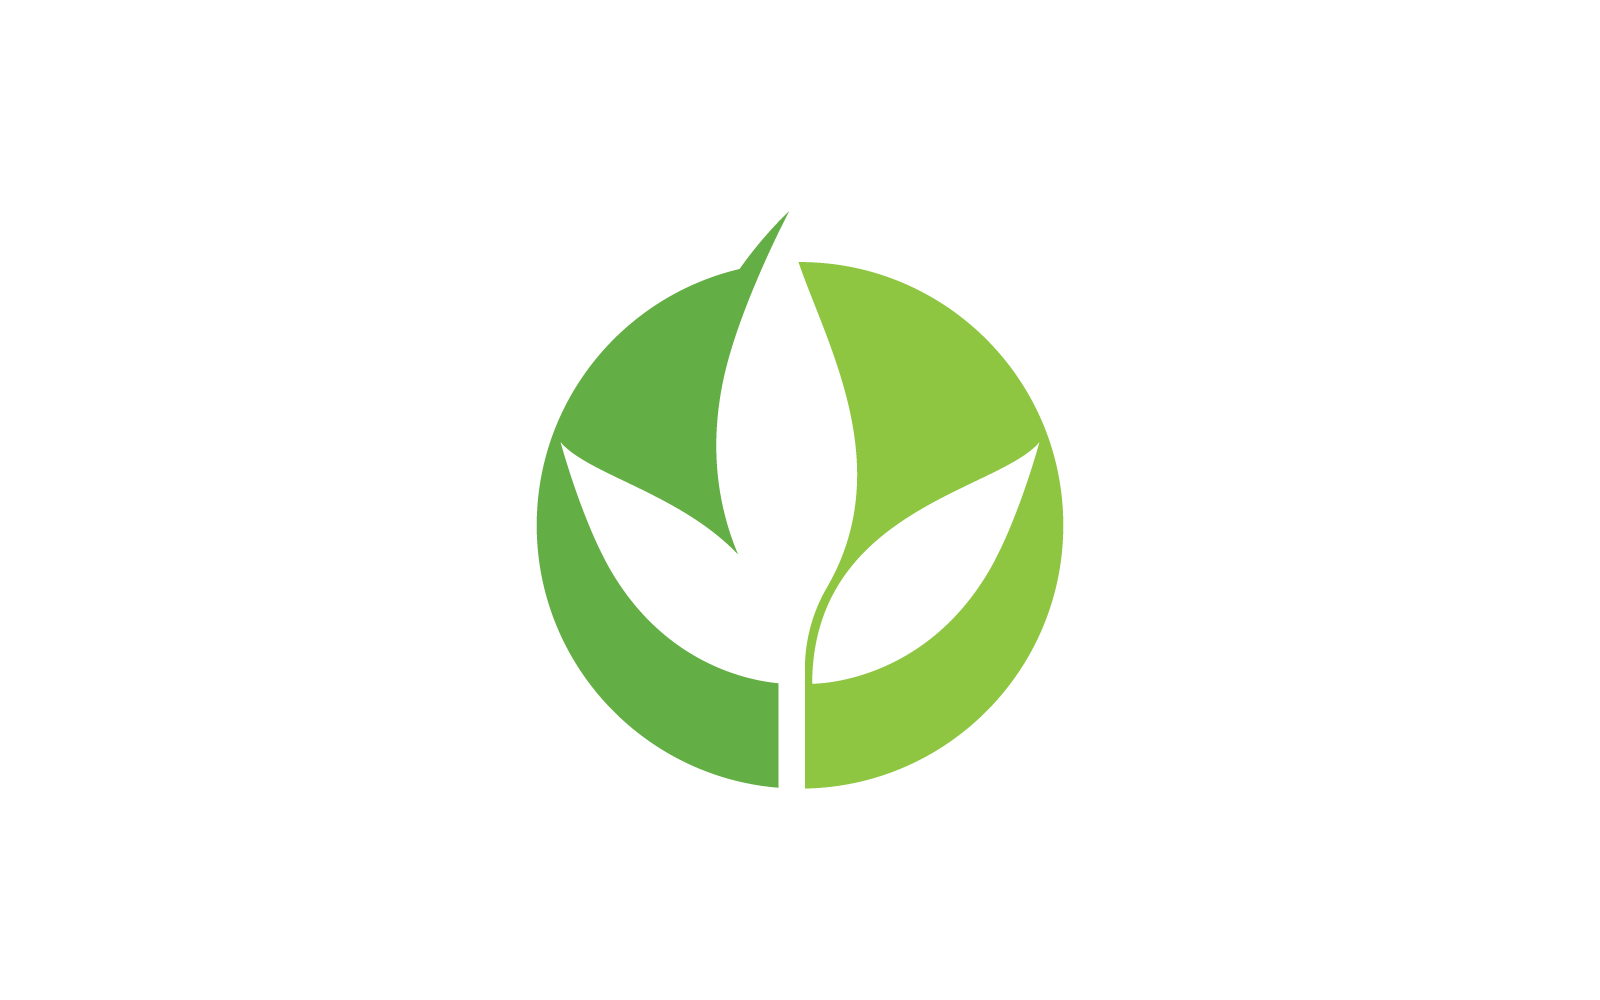 Eco green leaf illustration logo flat design Logo Template